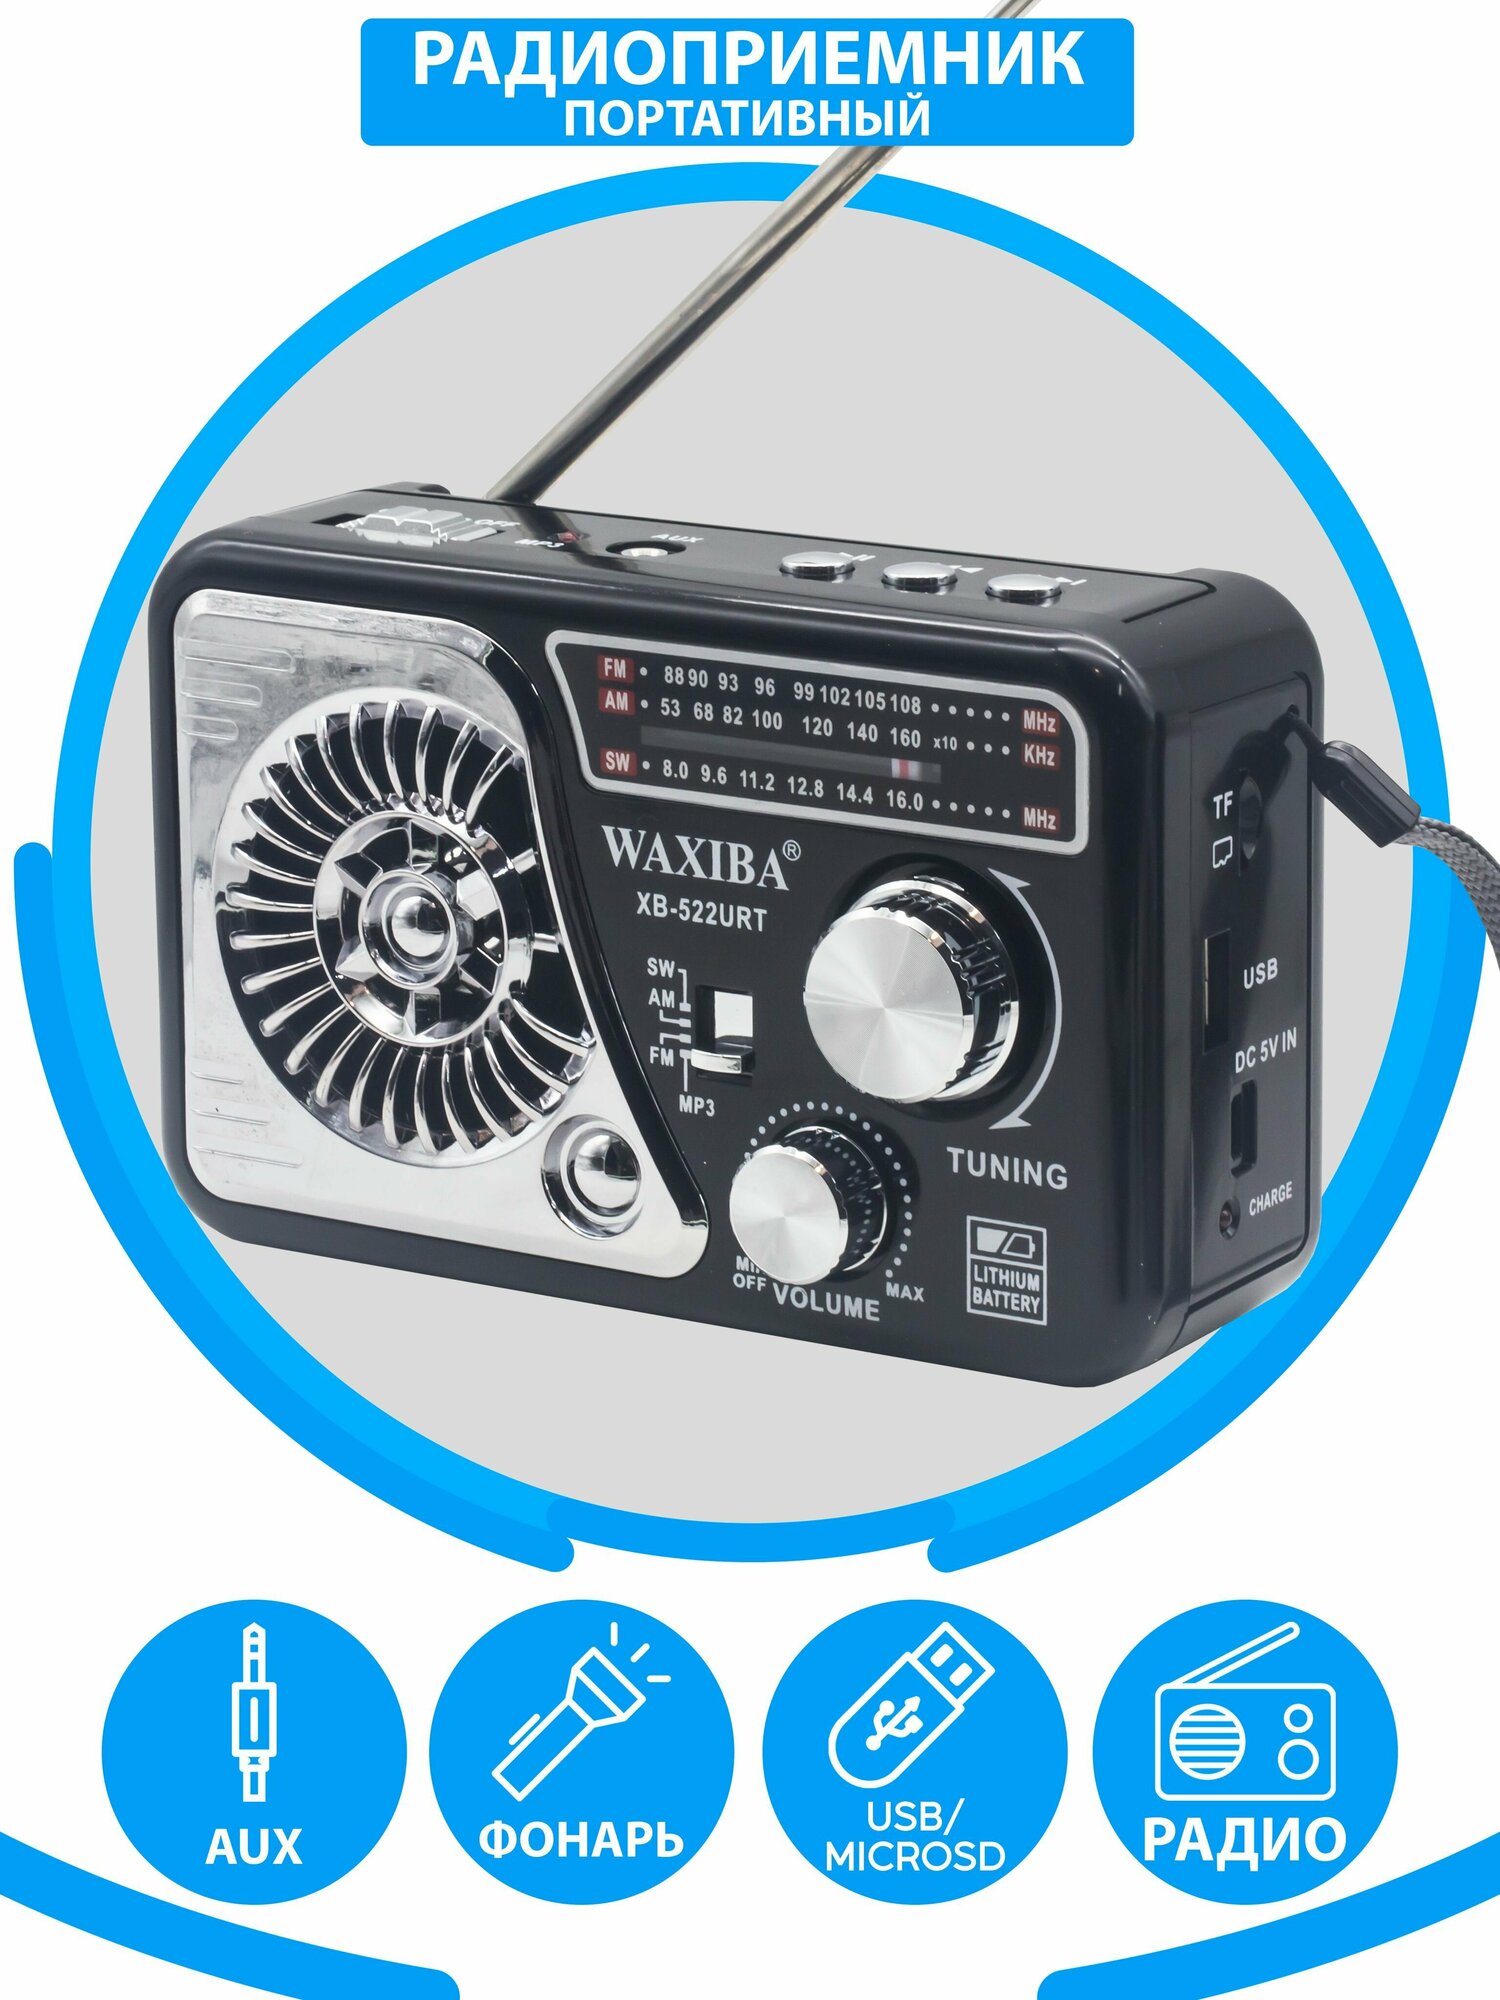 Радиоприемник в классическом стиле с расширенным радио AM FM SW